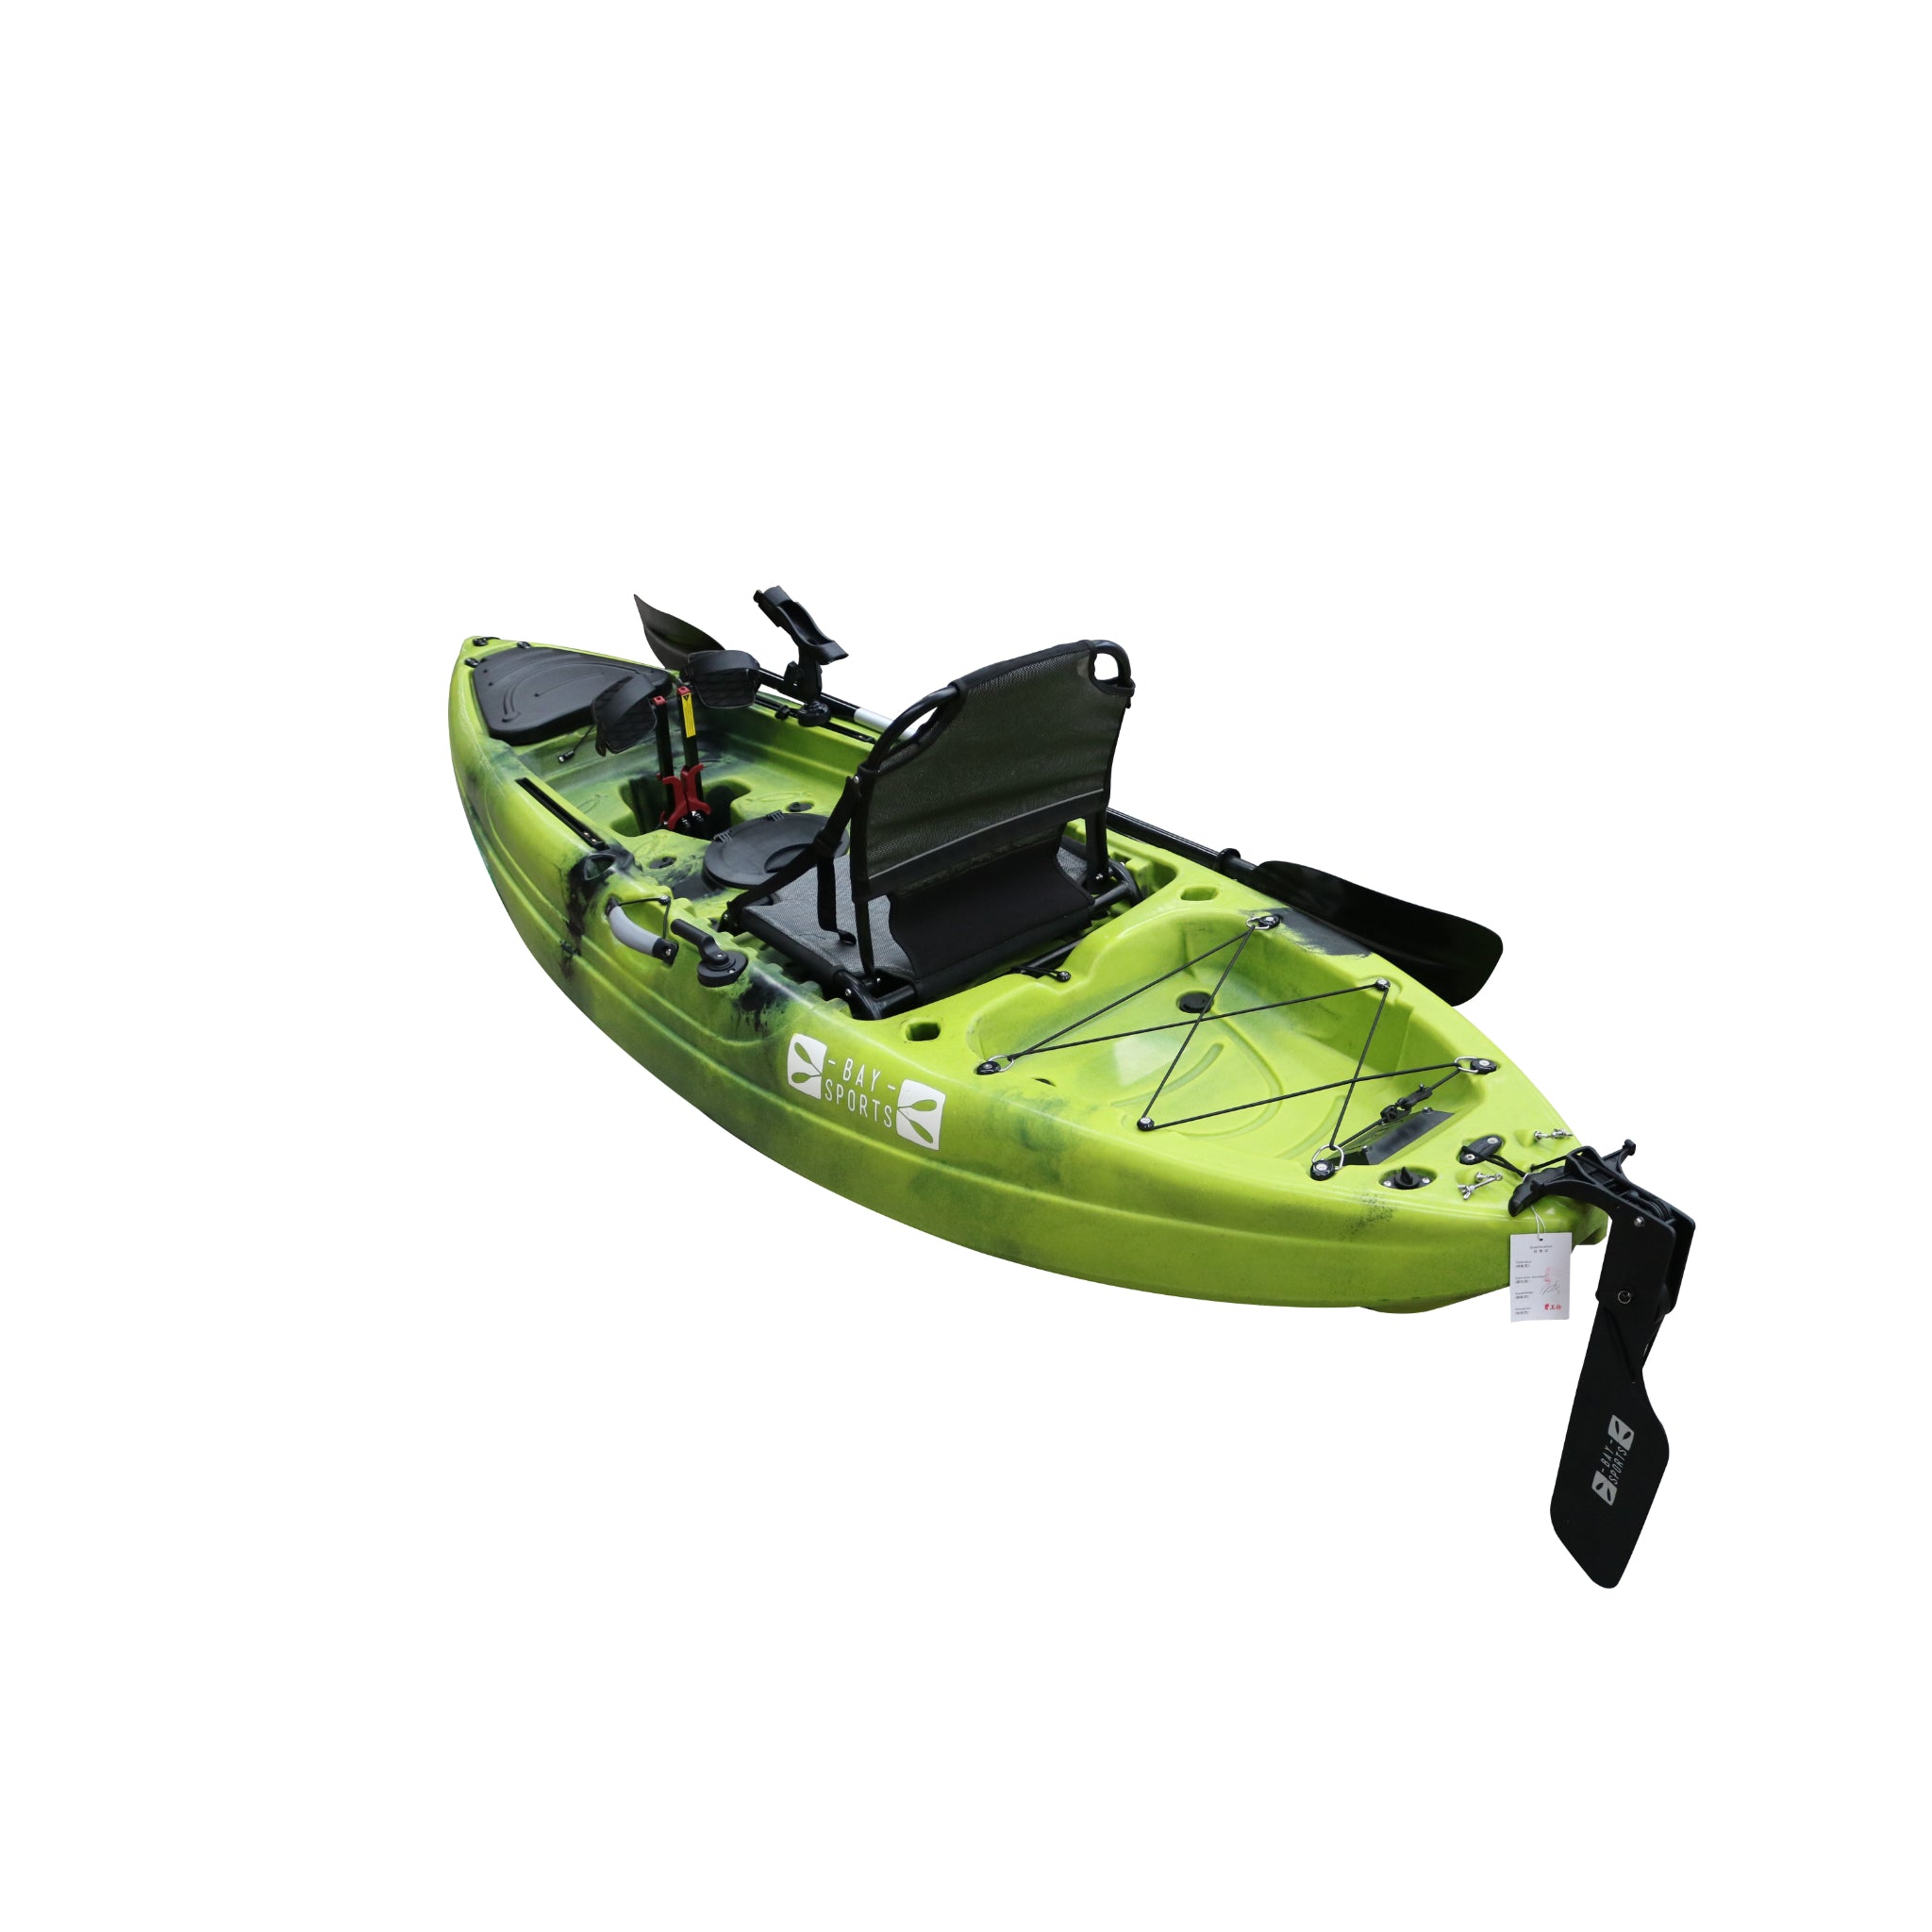 Pedal Pro Fish - 2.9m Flap-Powered Fishing Kayak, Pedal Kayaks